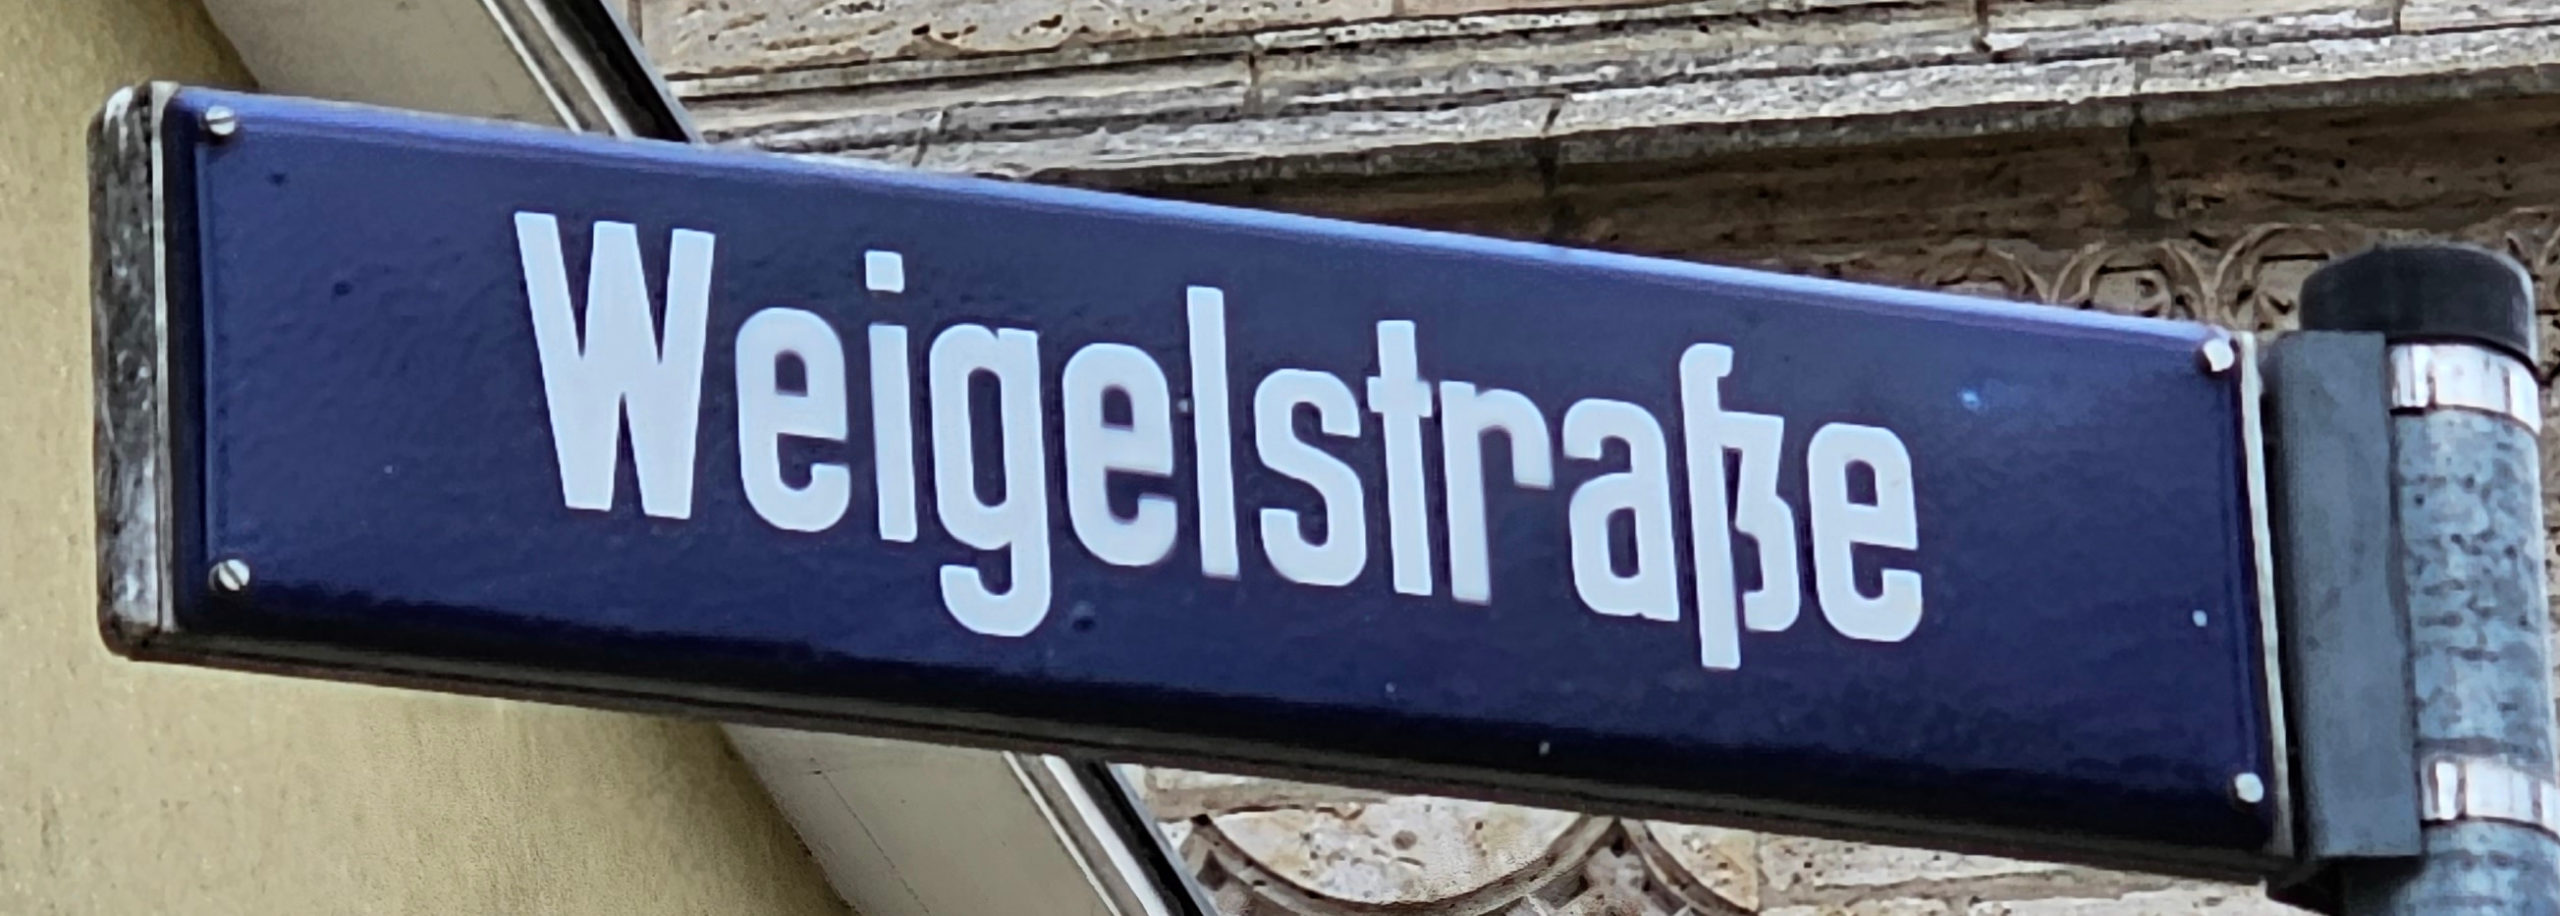 Straßenschild "Weigelstraße"